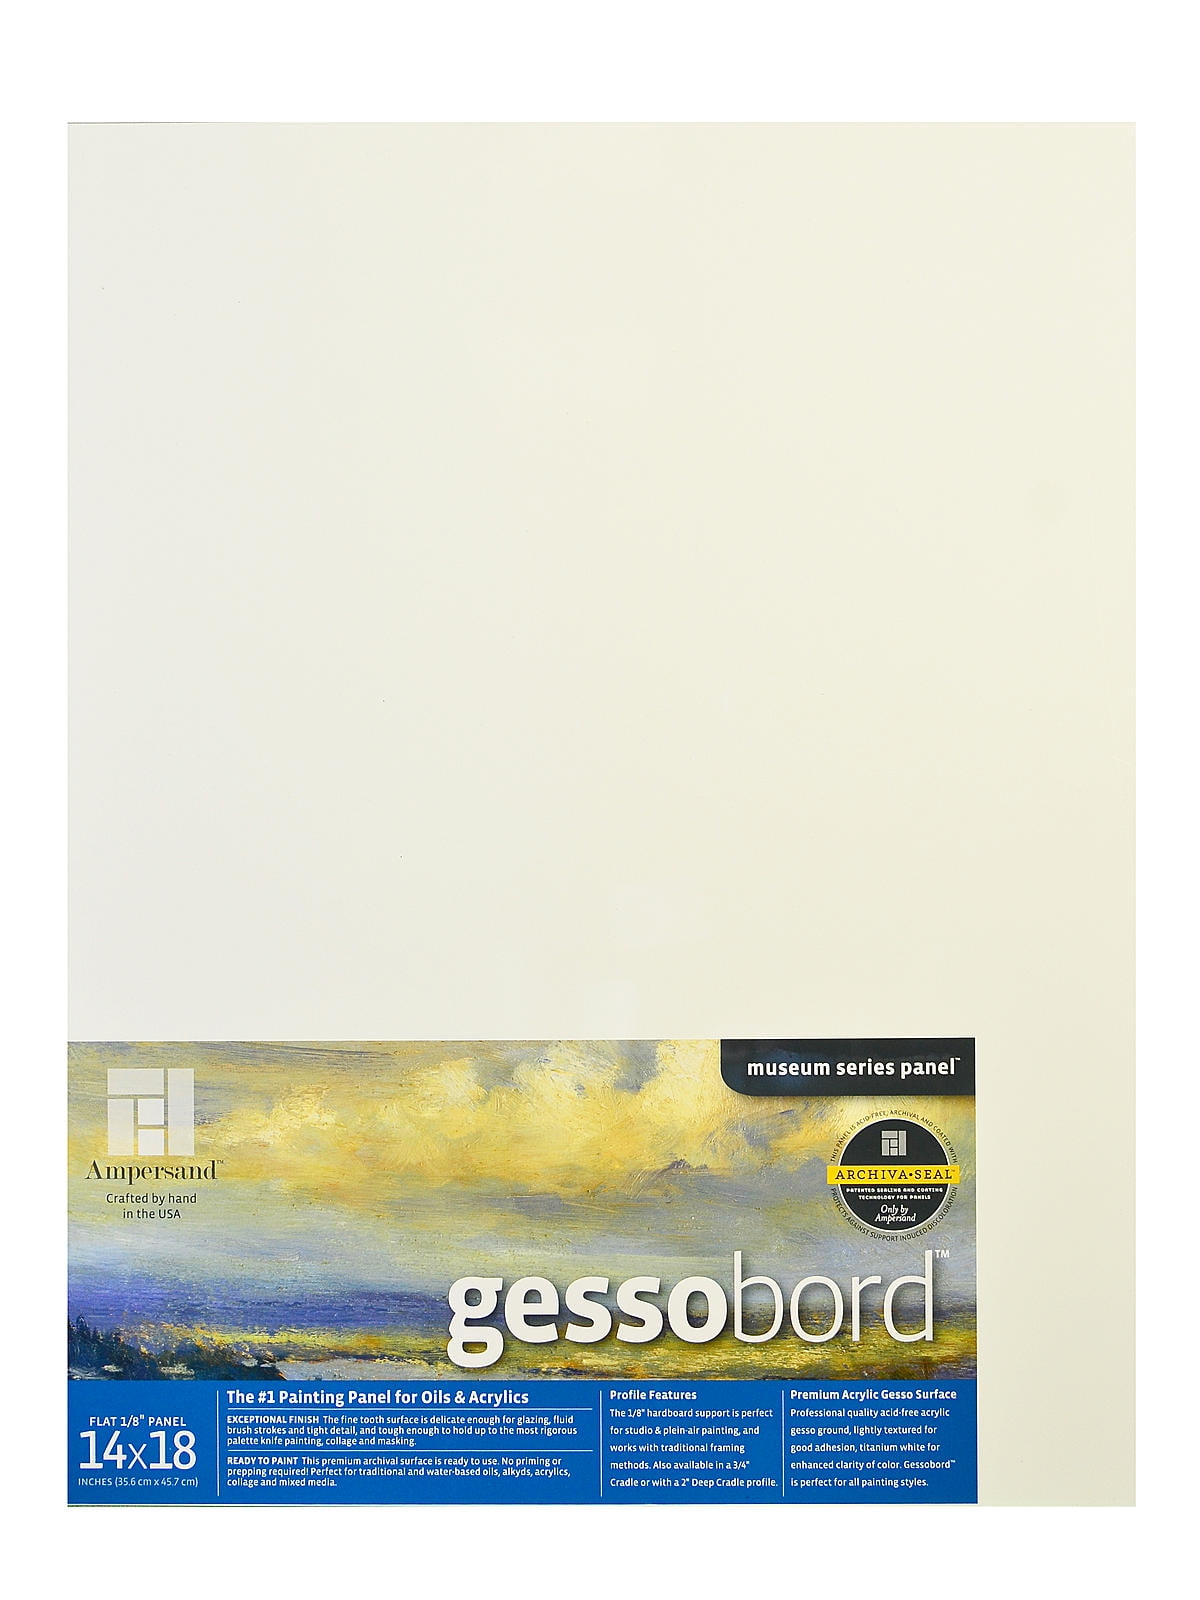 Darice Perforated Plastic Canvas 14 Count 8.5X11 2/Pkg-White